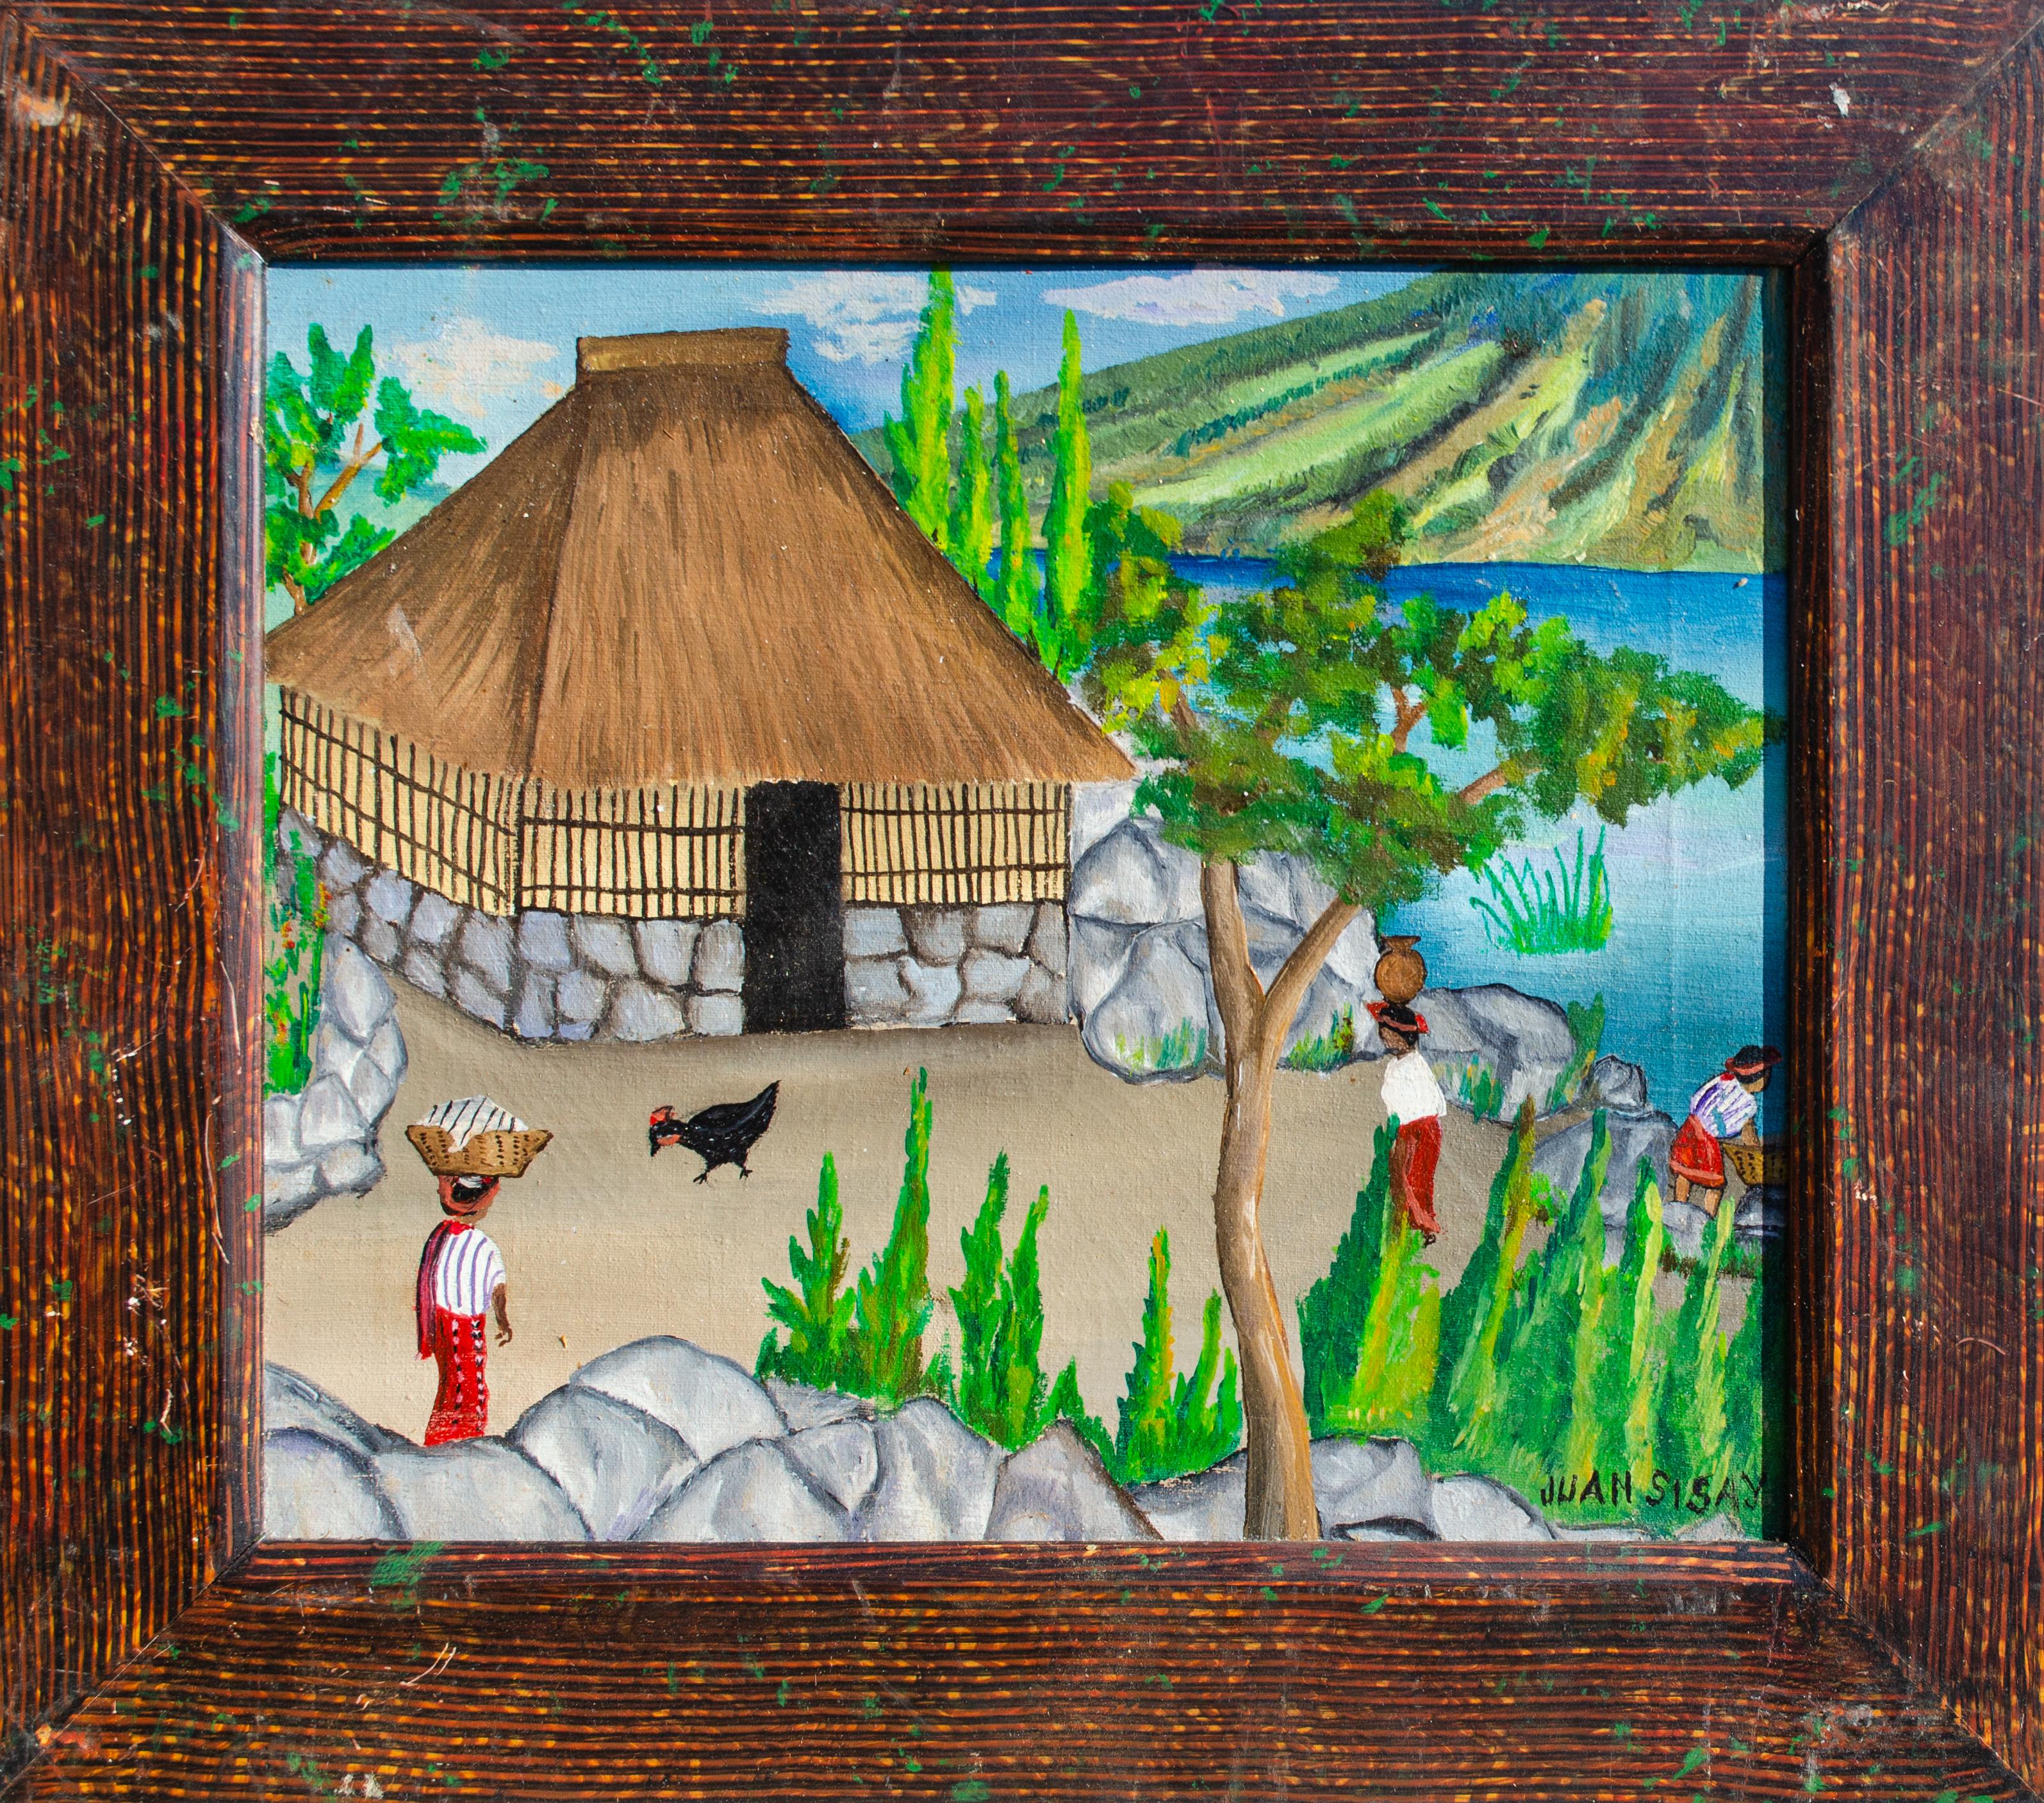 Juan Sisay (Guatémaltèque, 1921-1989)
Sans titre, c. 1950-1980
Huile sur toile avec cadre décoré
10 x 12 in.
Encadré : 13 3/8 x 15 1/2 in.
Signé en bas à droite : Juan Sisay

Juan Sisay est reconnu comme le premier peintre guatémaltèque du XXe